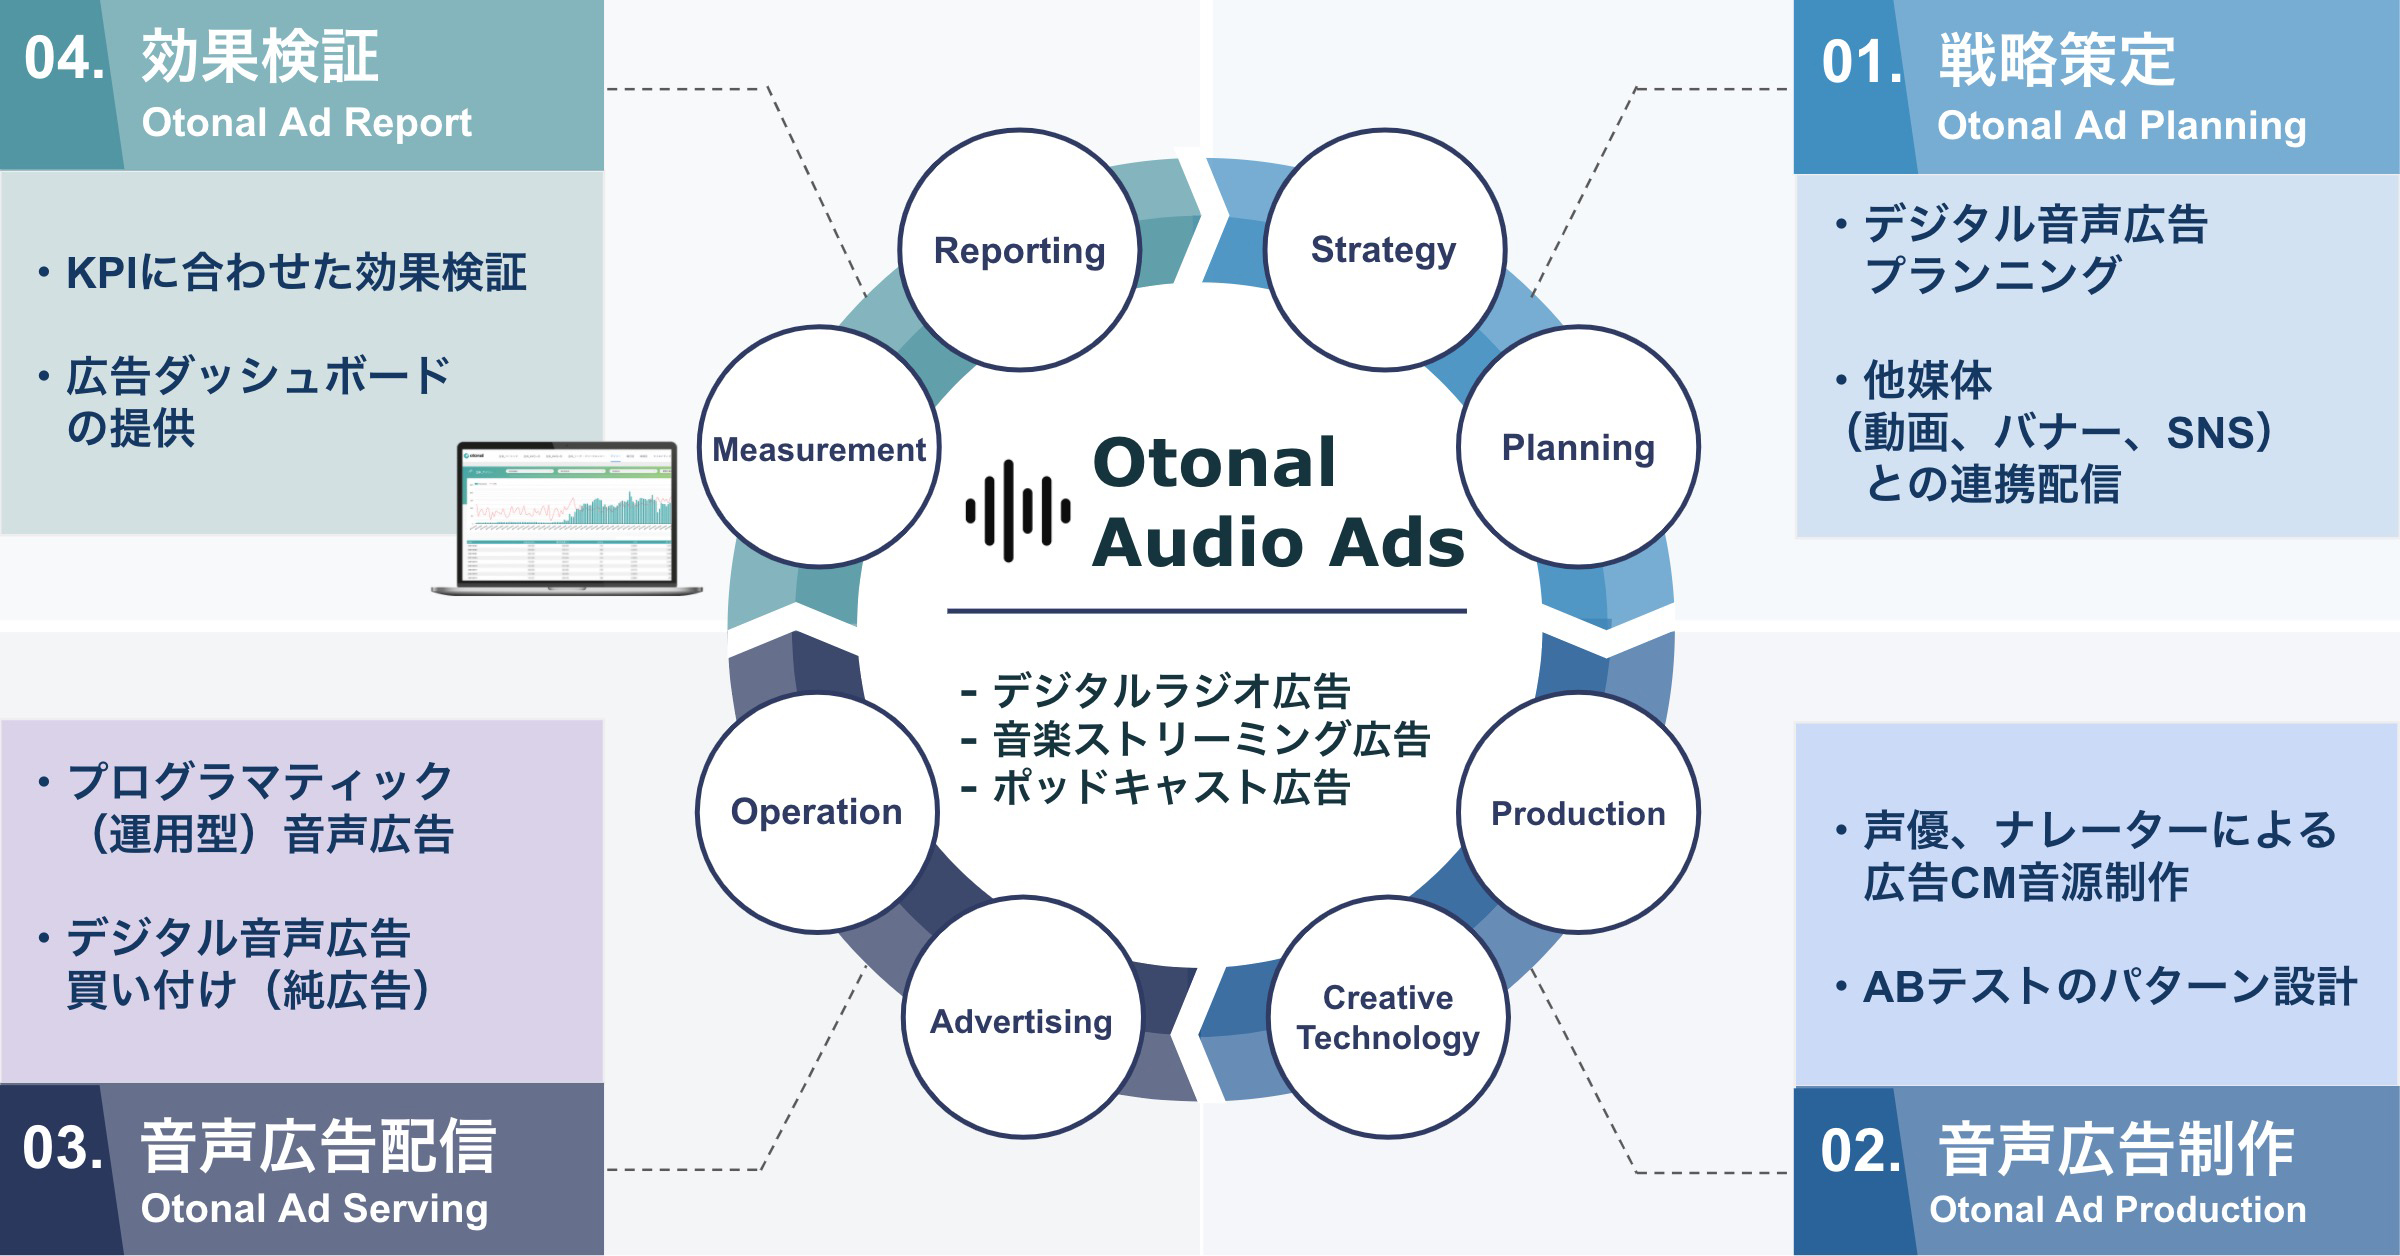 500件以上の音声広告提案から生まれたデジタル音声広告統合ソリューション『Otonal Audio Ads』